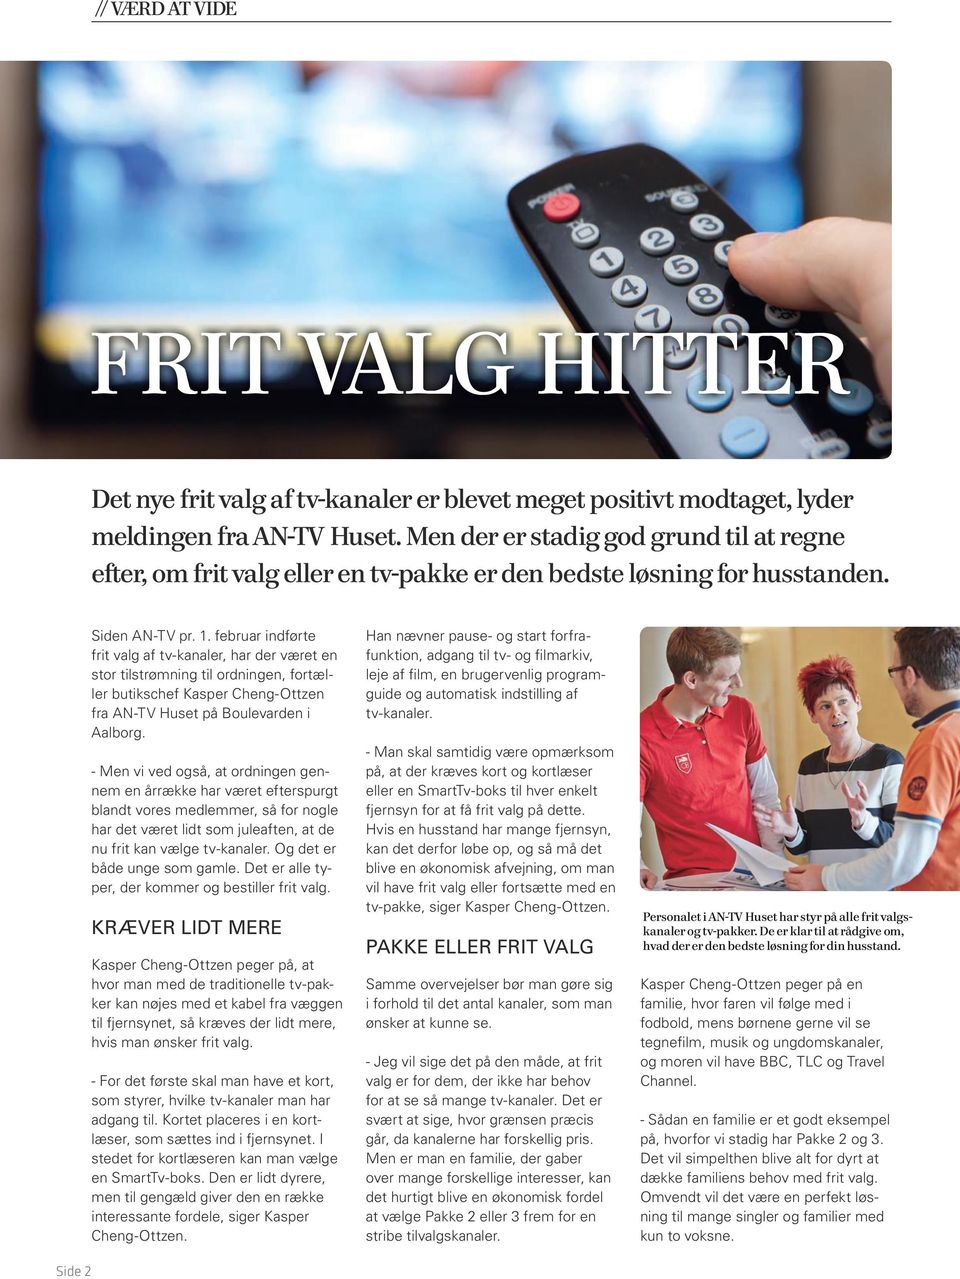 februar indførte frit valg af tv-kanaler, har der været en stor tilstrømning til ordningen, fortæller butikschef Kasper Cheng-Ottzen fra AN-TV Huset på Boulevarden i Aalborg.